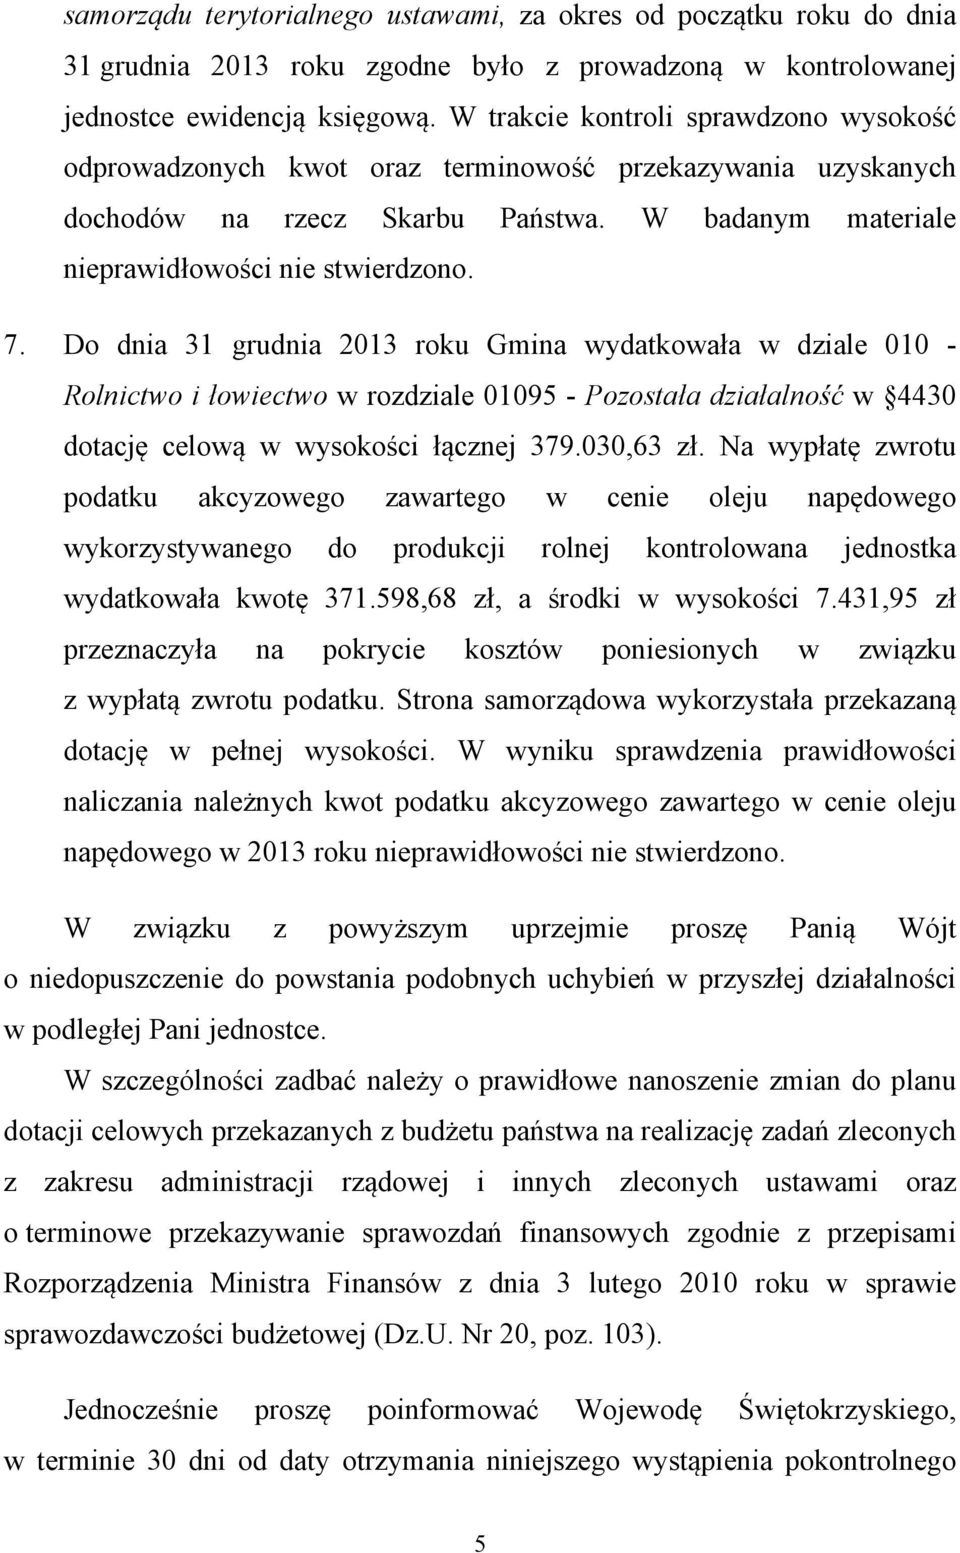 Do dnia 31 grudnia 2013 roku Gmina wydatkowała w dziale 010 - Rolnictwo i łowiectwo w rozdziale 01095 - Pozostała działalność w 4430 dotację celową w wysokości łącznej 379.030,63 zł.